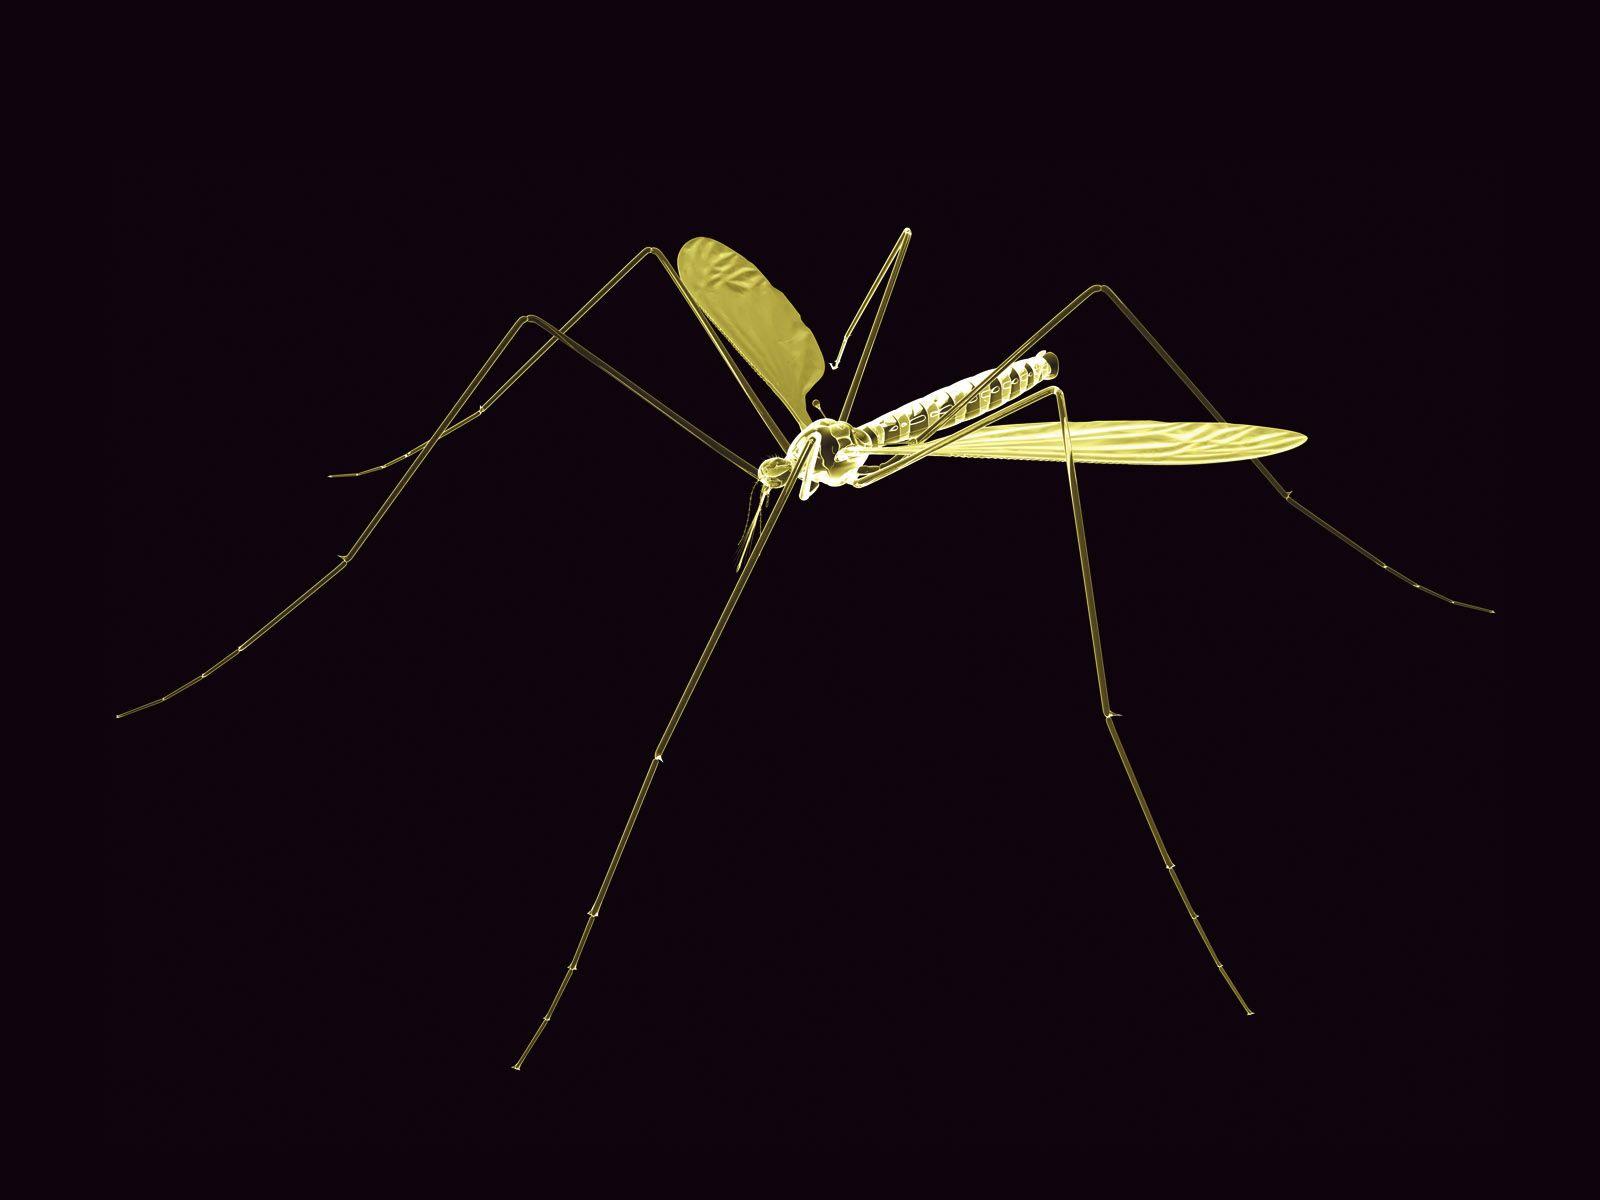 Neon Mosquito wallpaper. Neon Mosquito